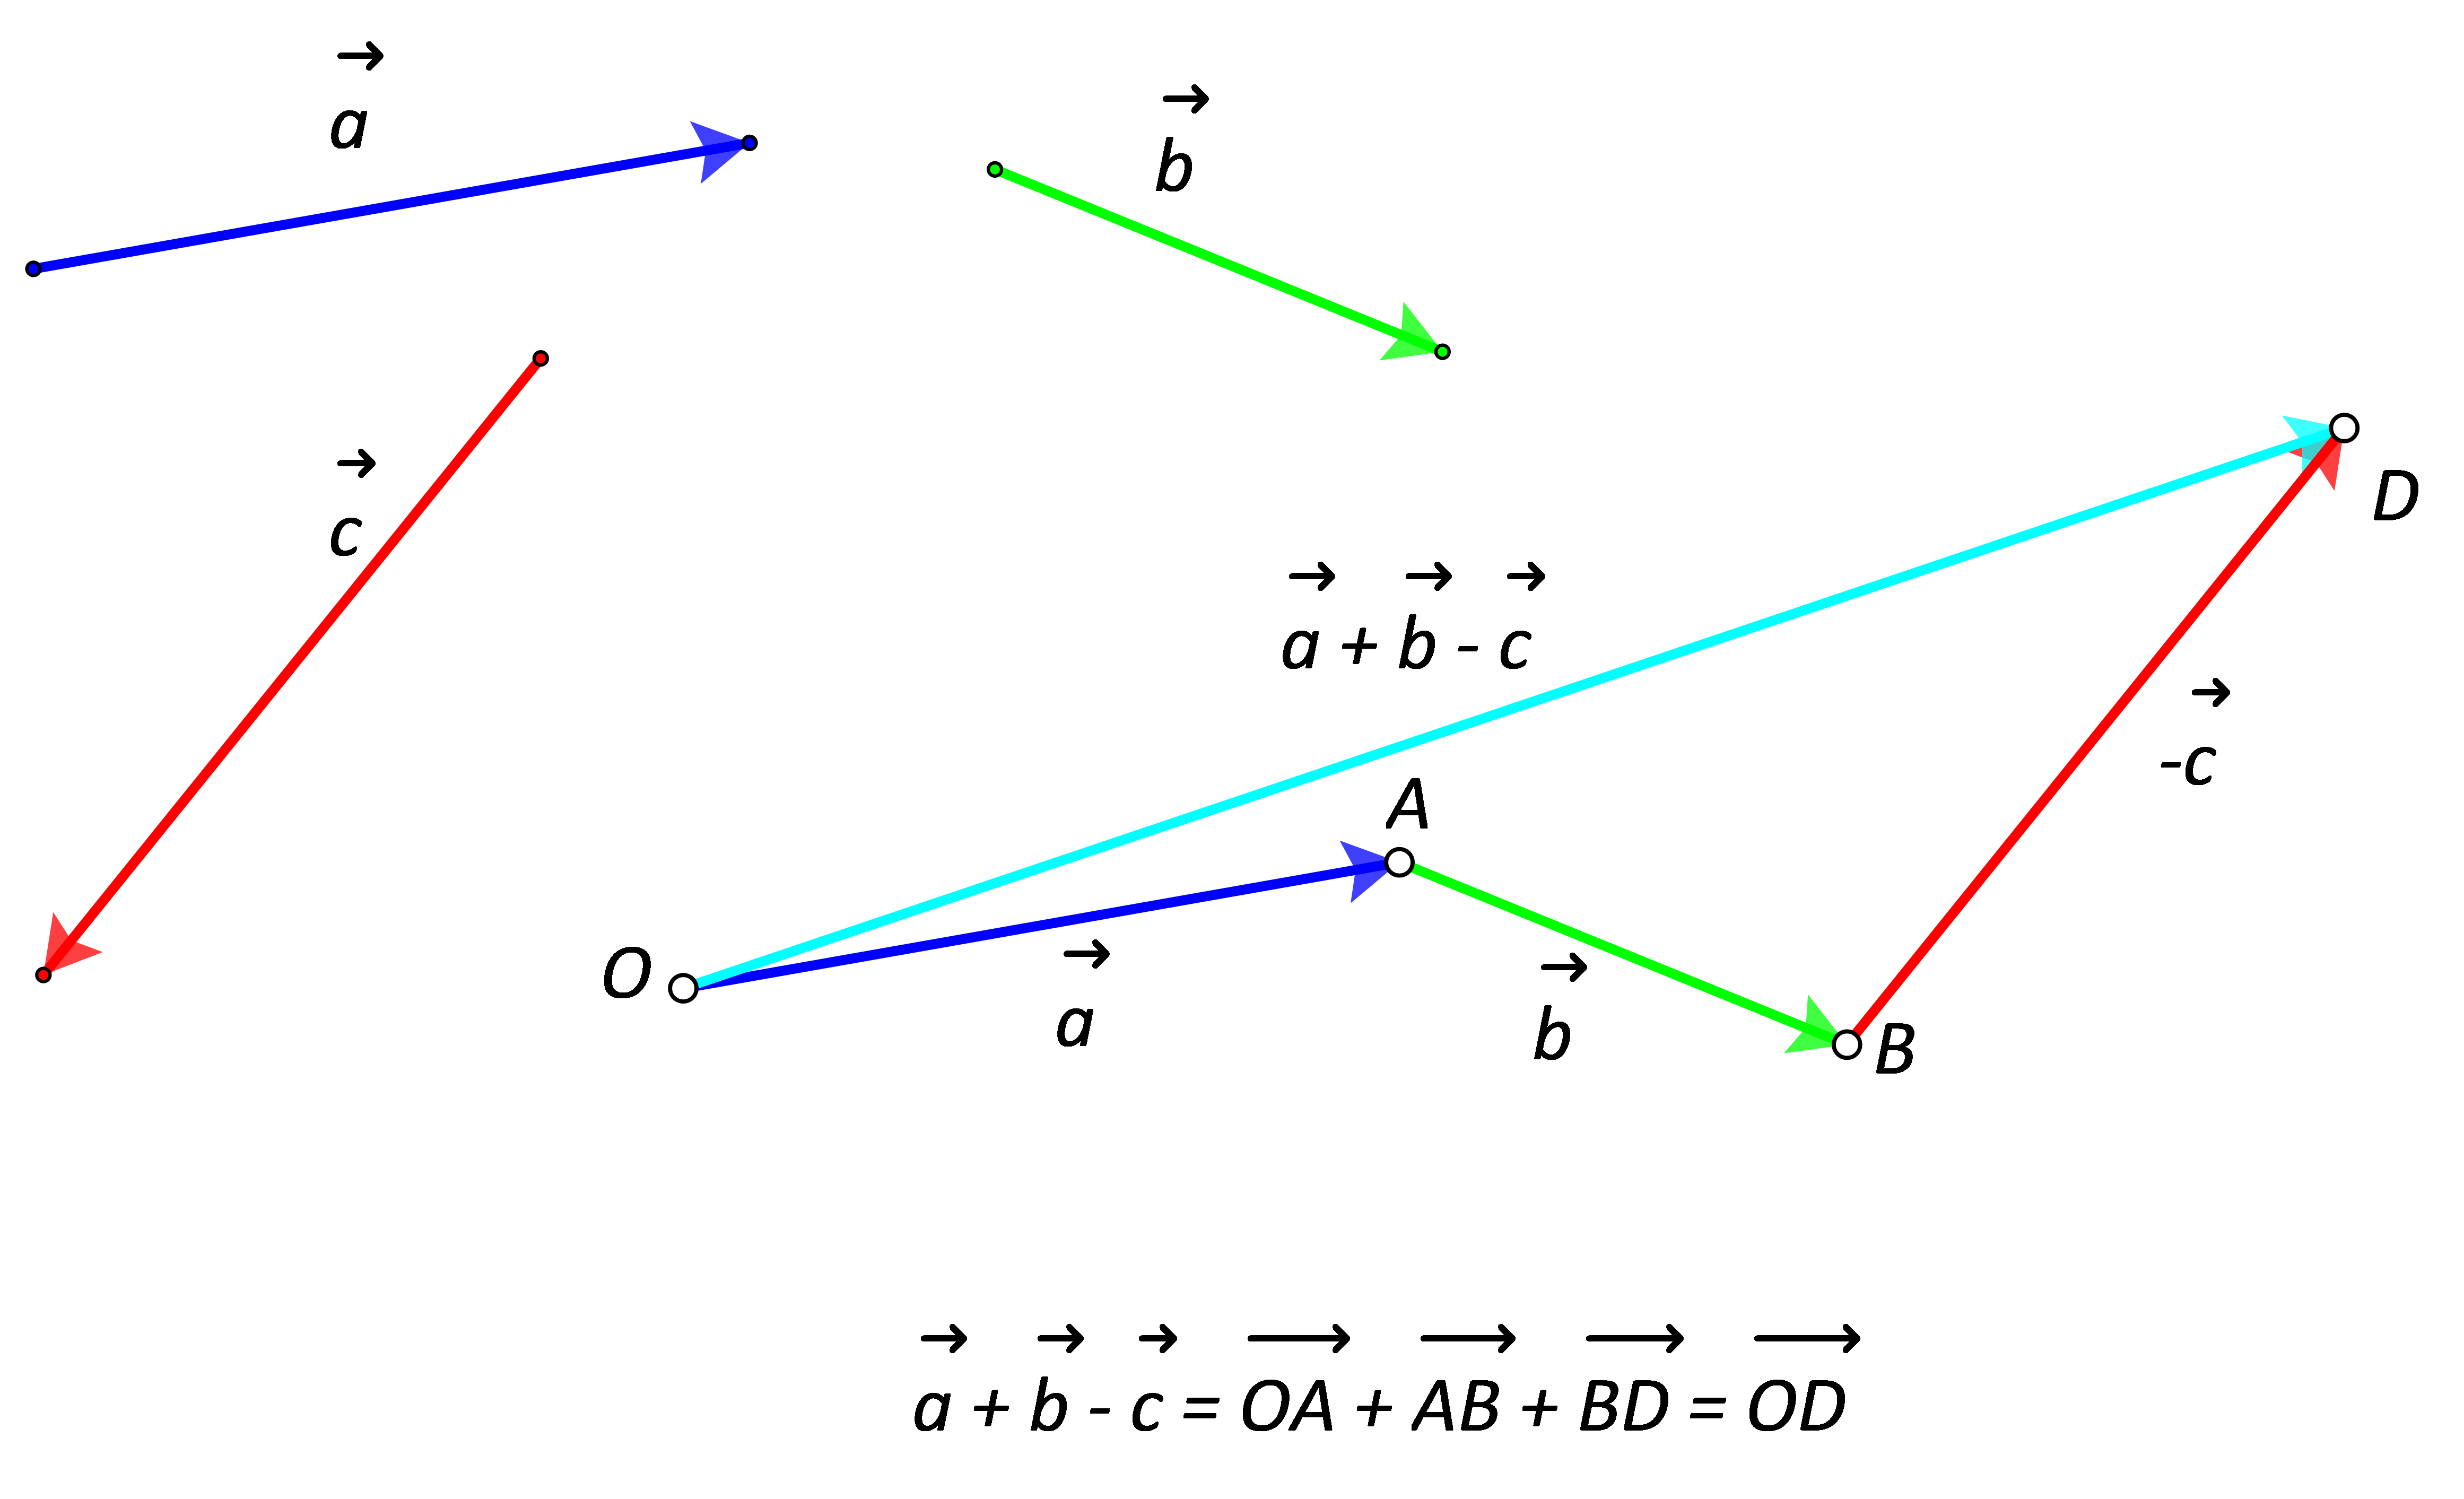 Slika prikazuje zbroj i razliku triju nekolinearnih vektora dobiven "nadovezivanjem" početka sljedećeg vektora na završetak prethodnoga.